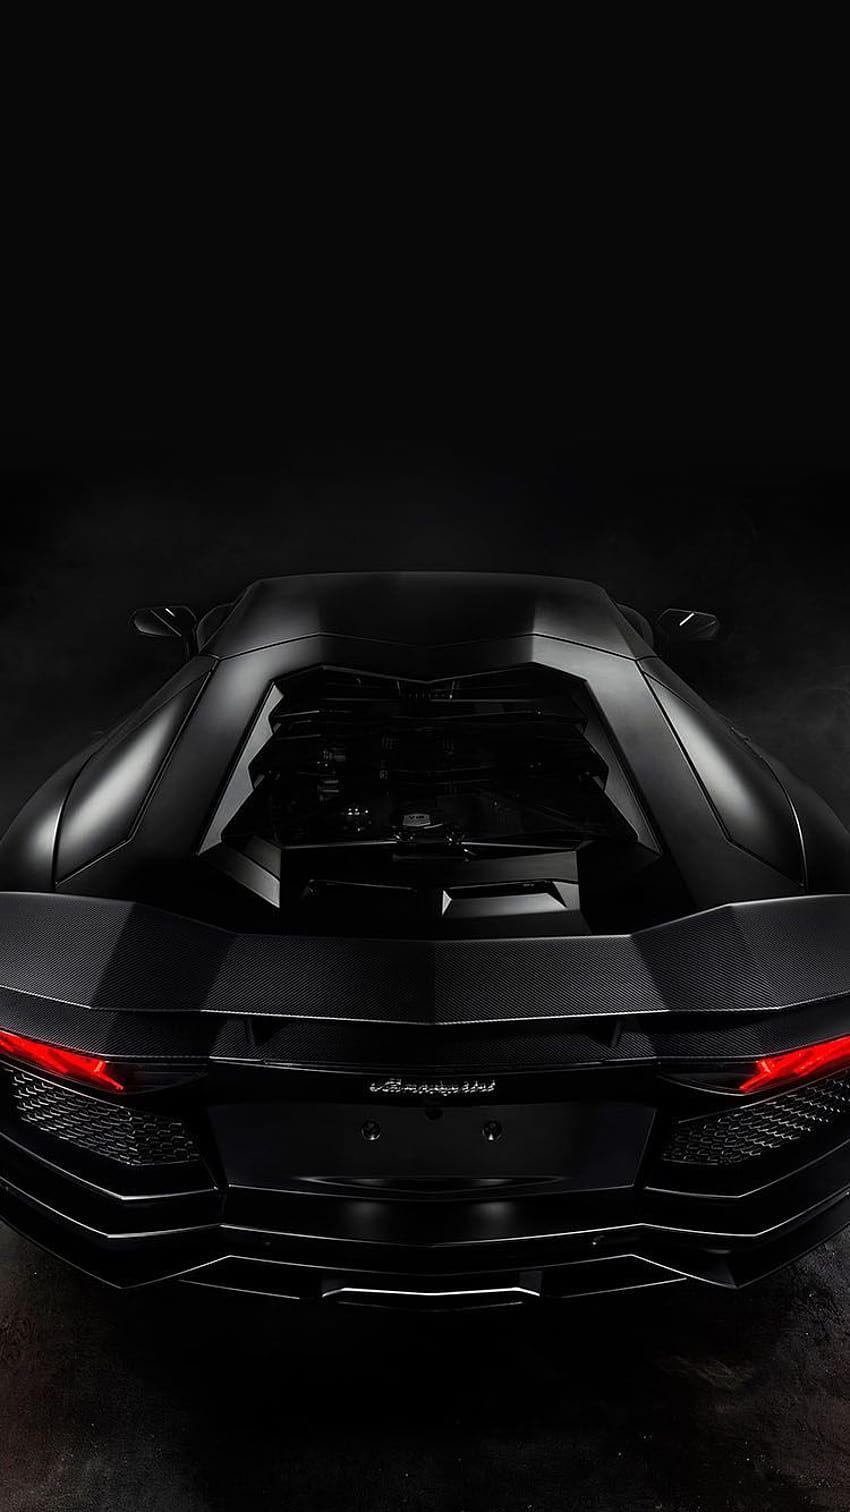 Lamborghini iPhone, aventador sv iphone 6 HD phone wallpaper